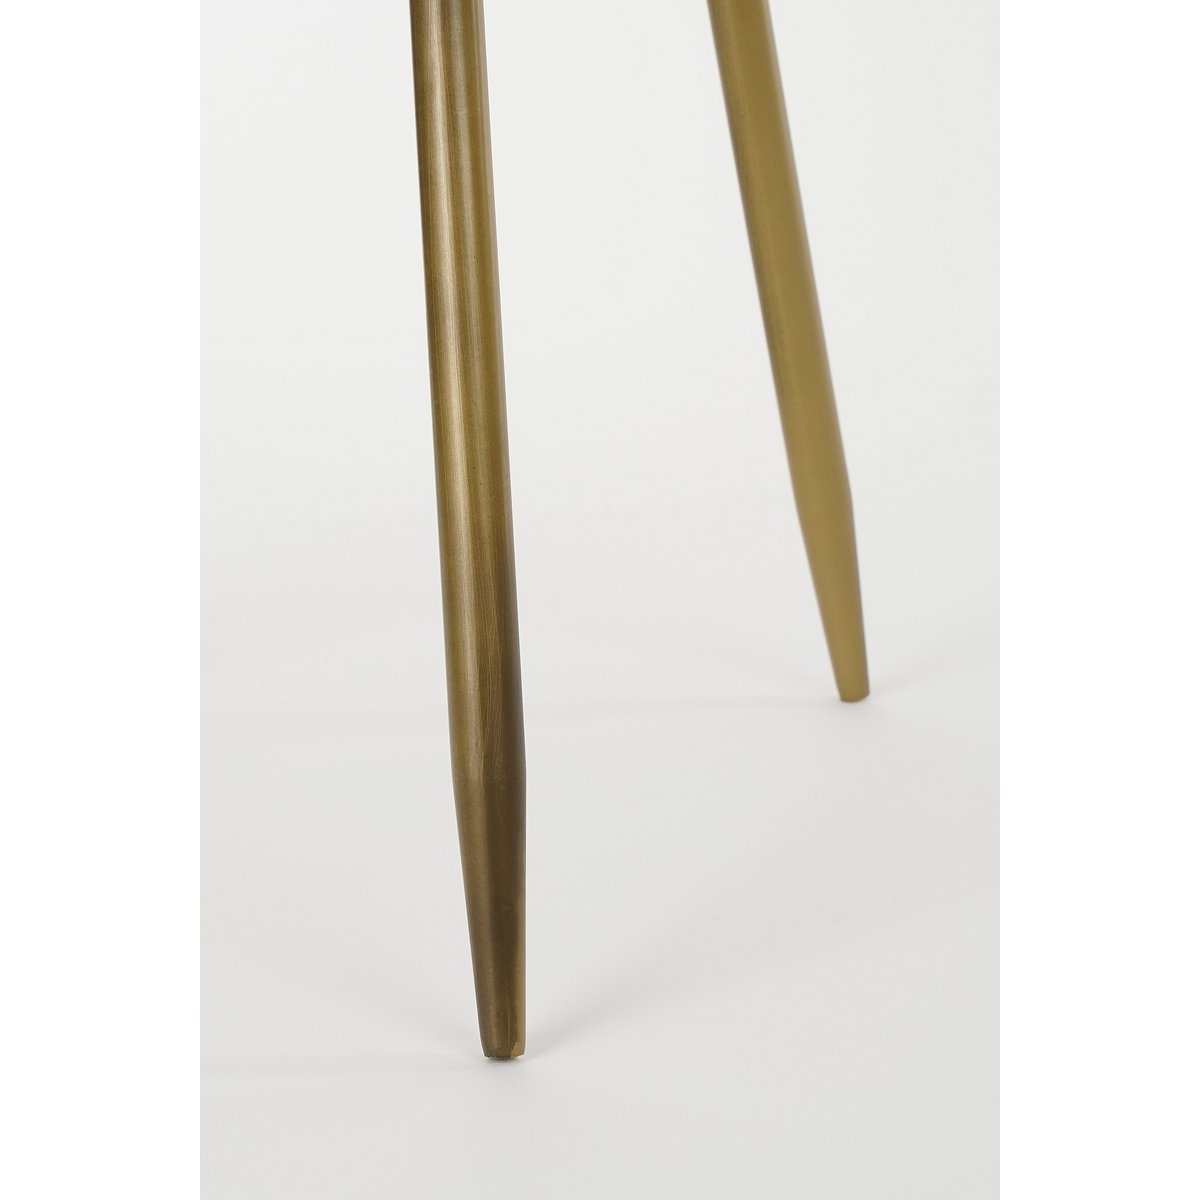 Flores Beistelltisch – H48 x Ø42 cm – Metall – Bronze